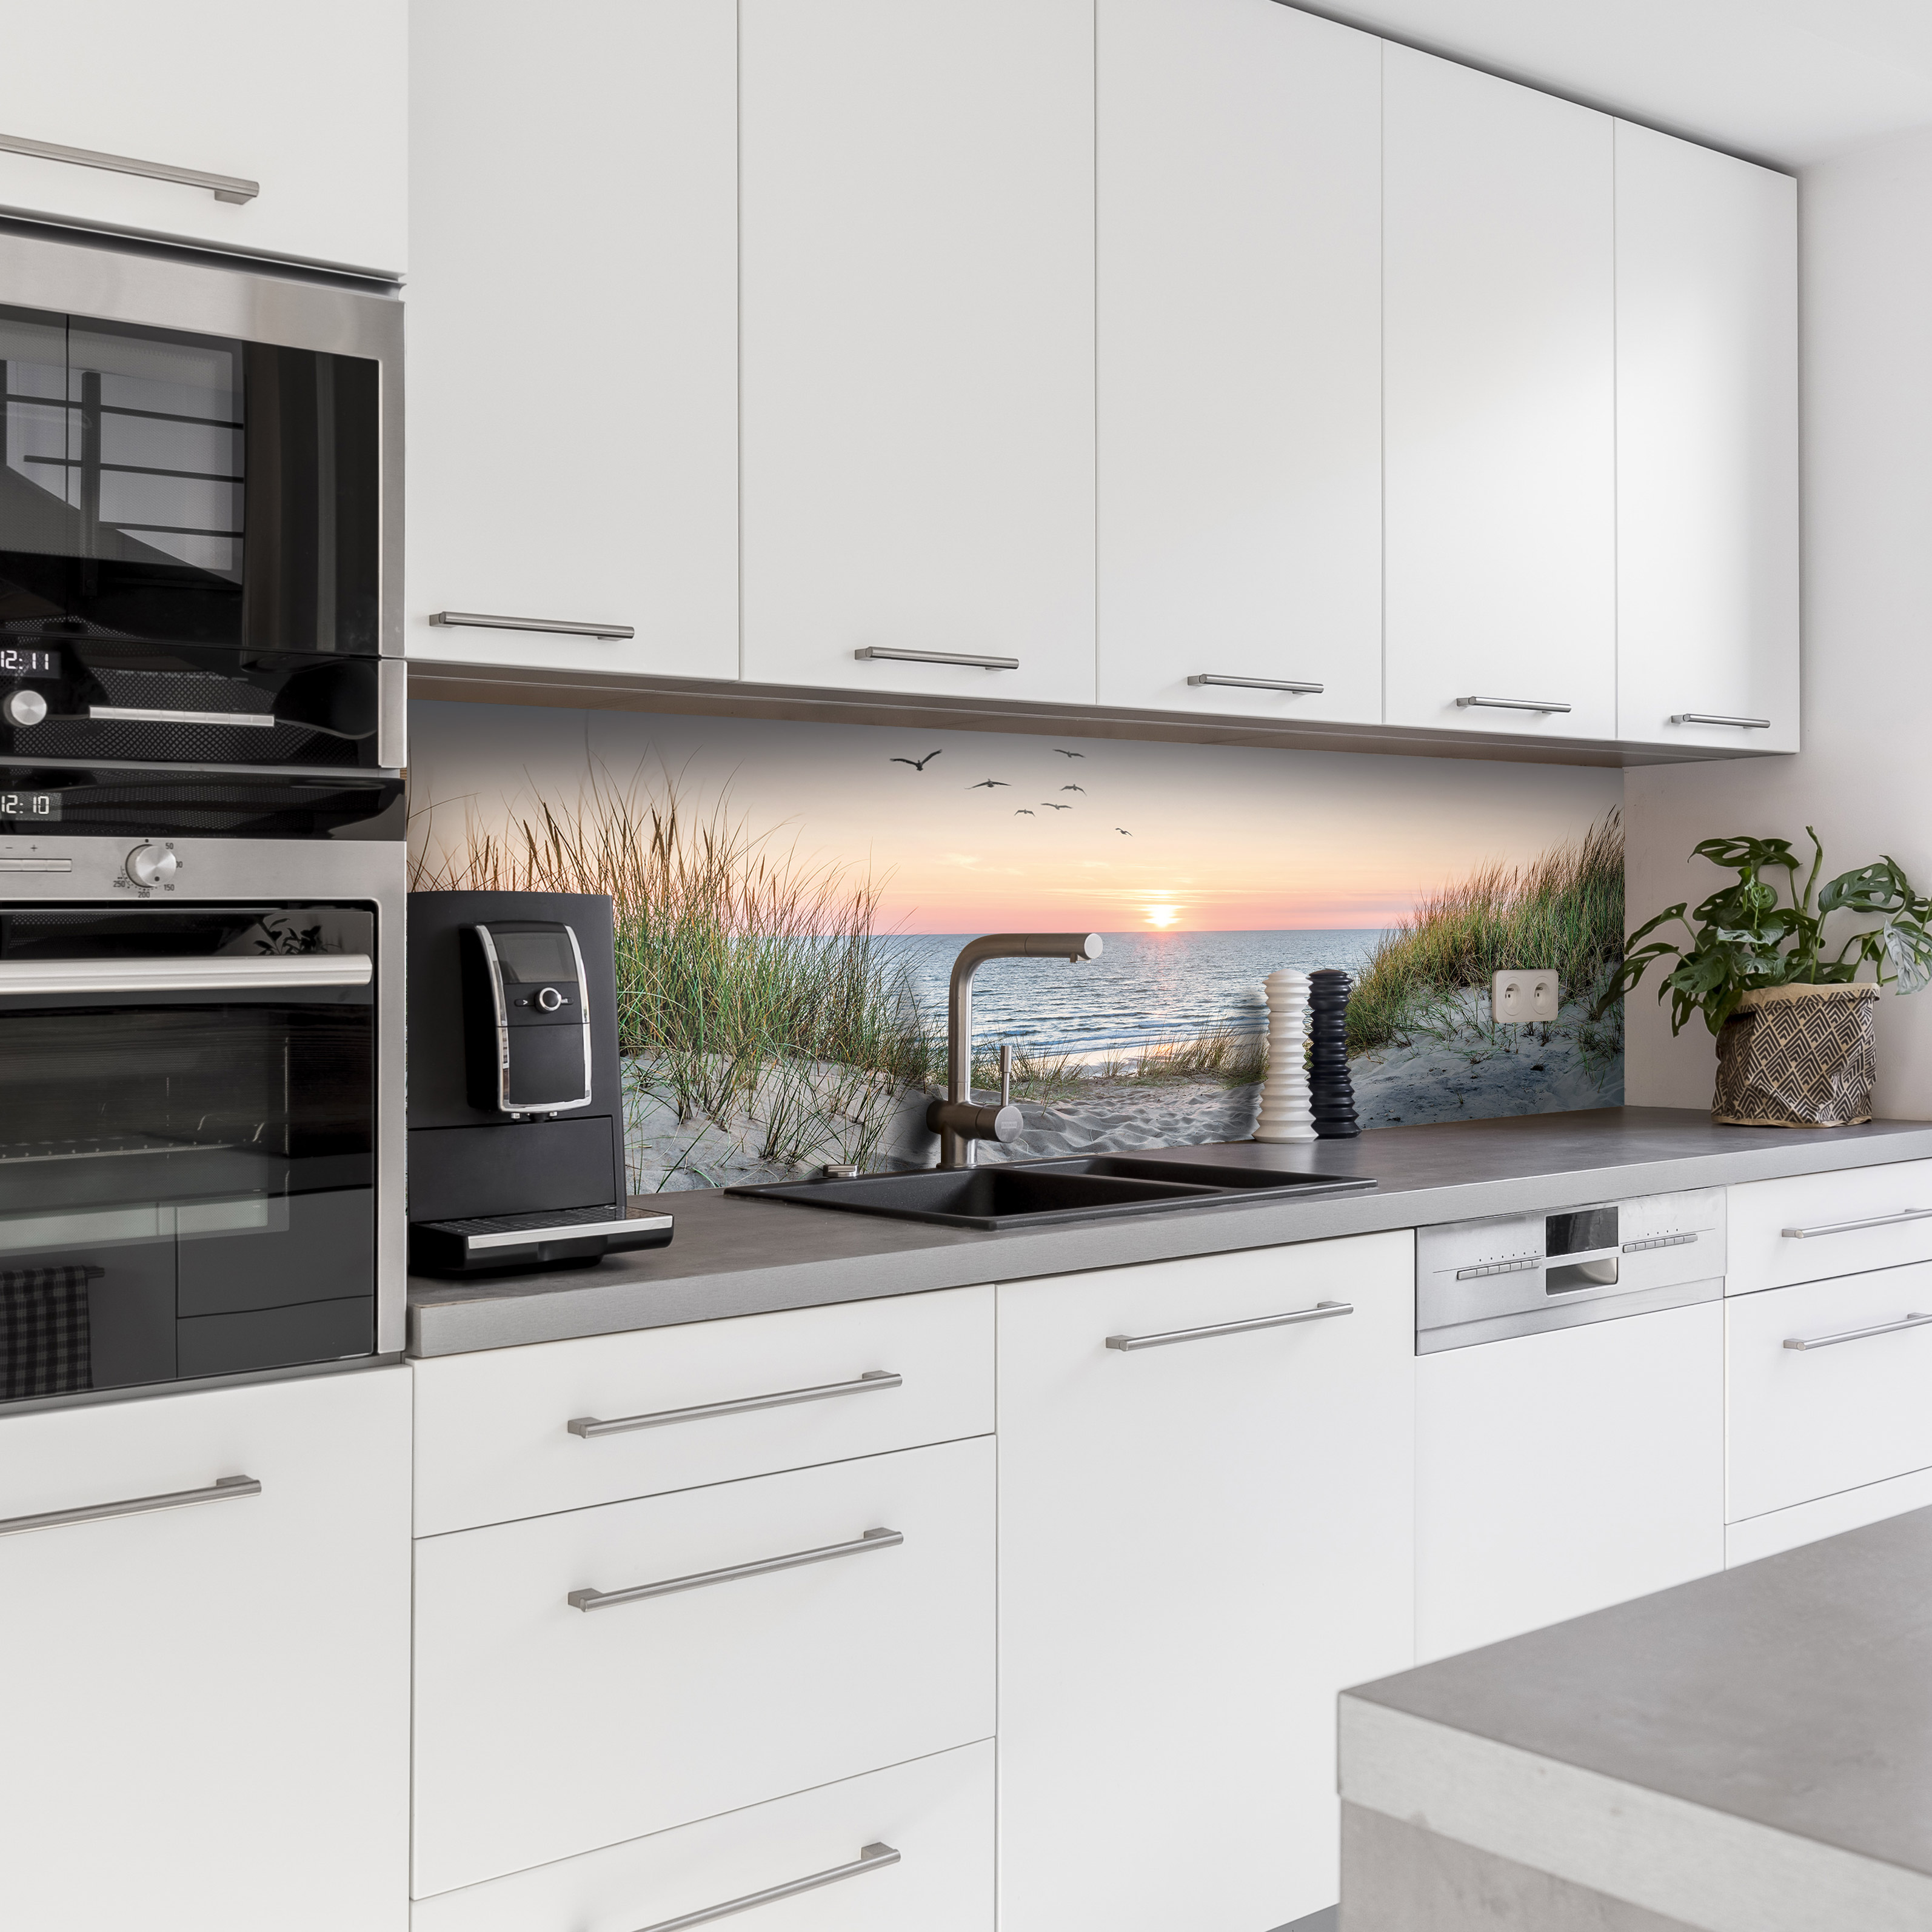 Küchenrückwand mit Dünengras V5 Motiv als Fliesenersatz und Spritzschutz 